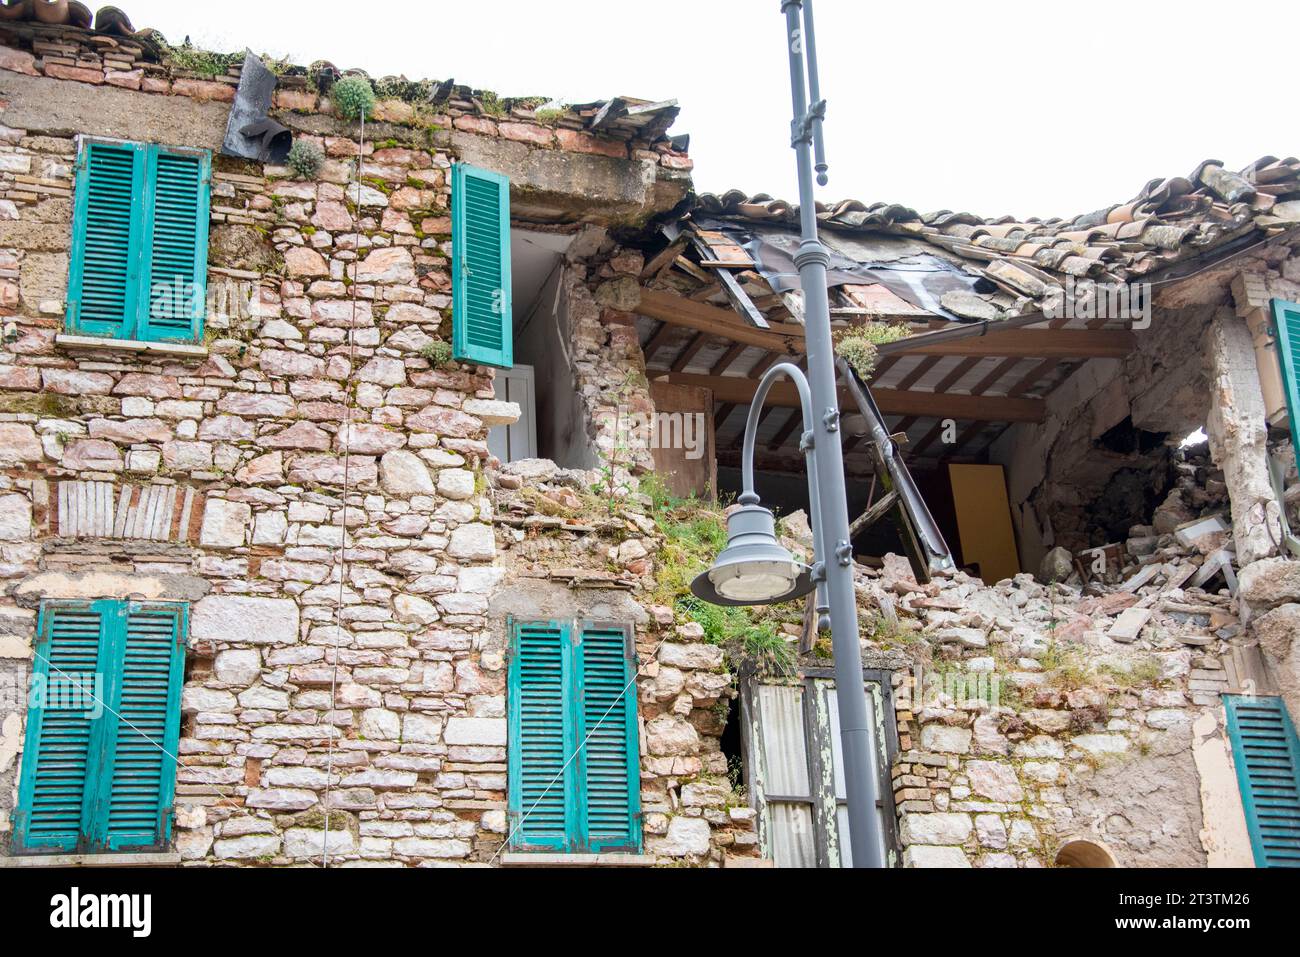 Ville de Castelluccio après le tremblement de terre - Italie Banque D'Images